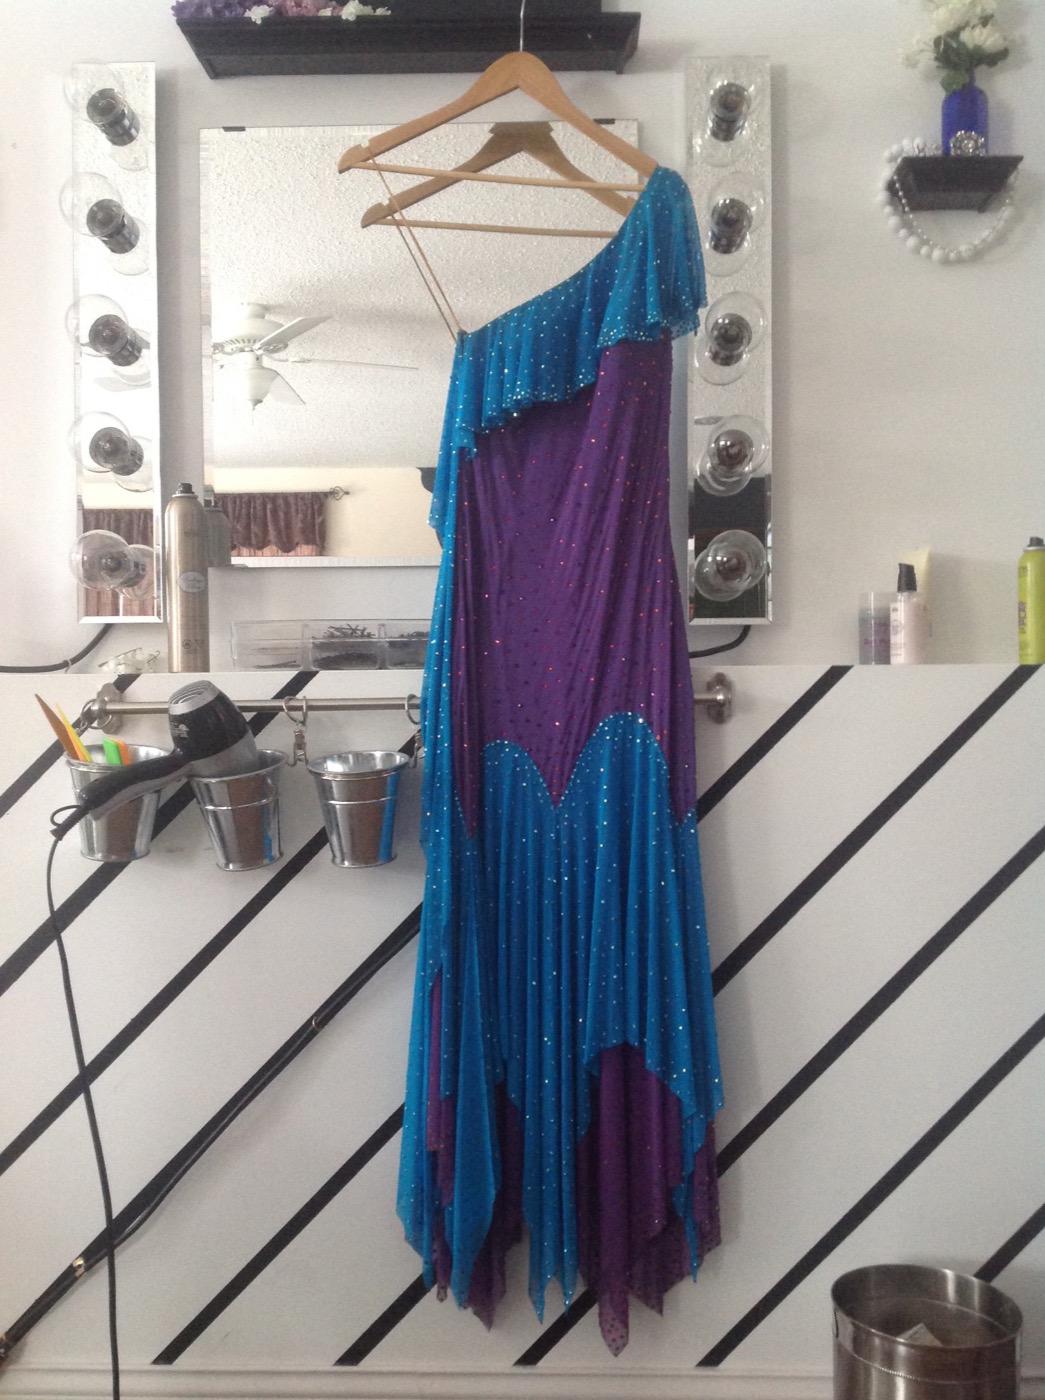 Dress on hanger